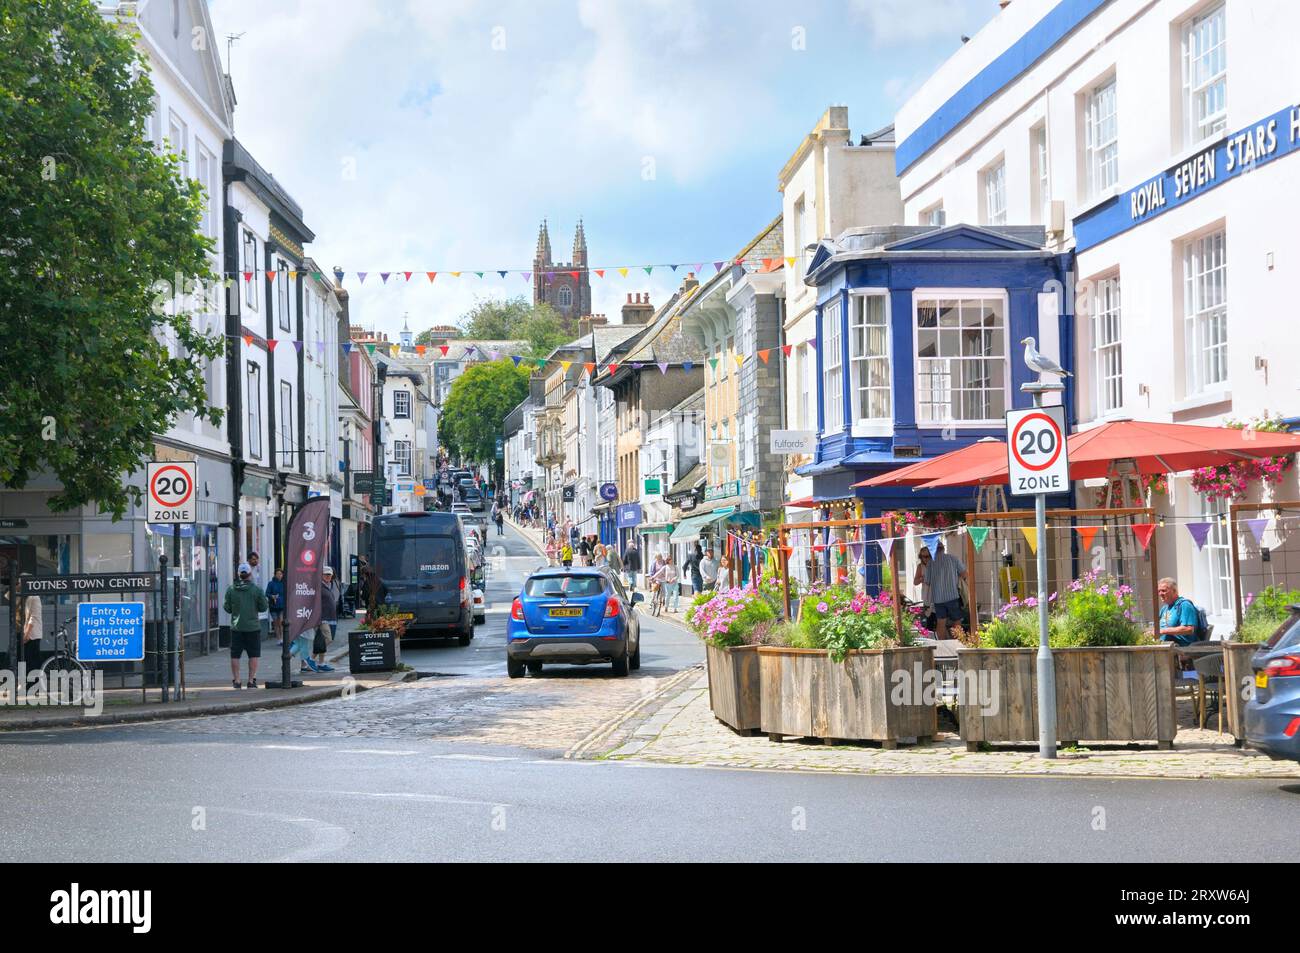 Regarder Fore Street dans le centre-ville de Totnes avec des magasins indépendants et des cafés et St Mary's Parish Church, South Hams, South Devon, Angleterre, Royaume-Uni Banque D'Images